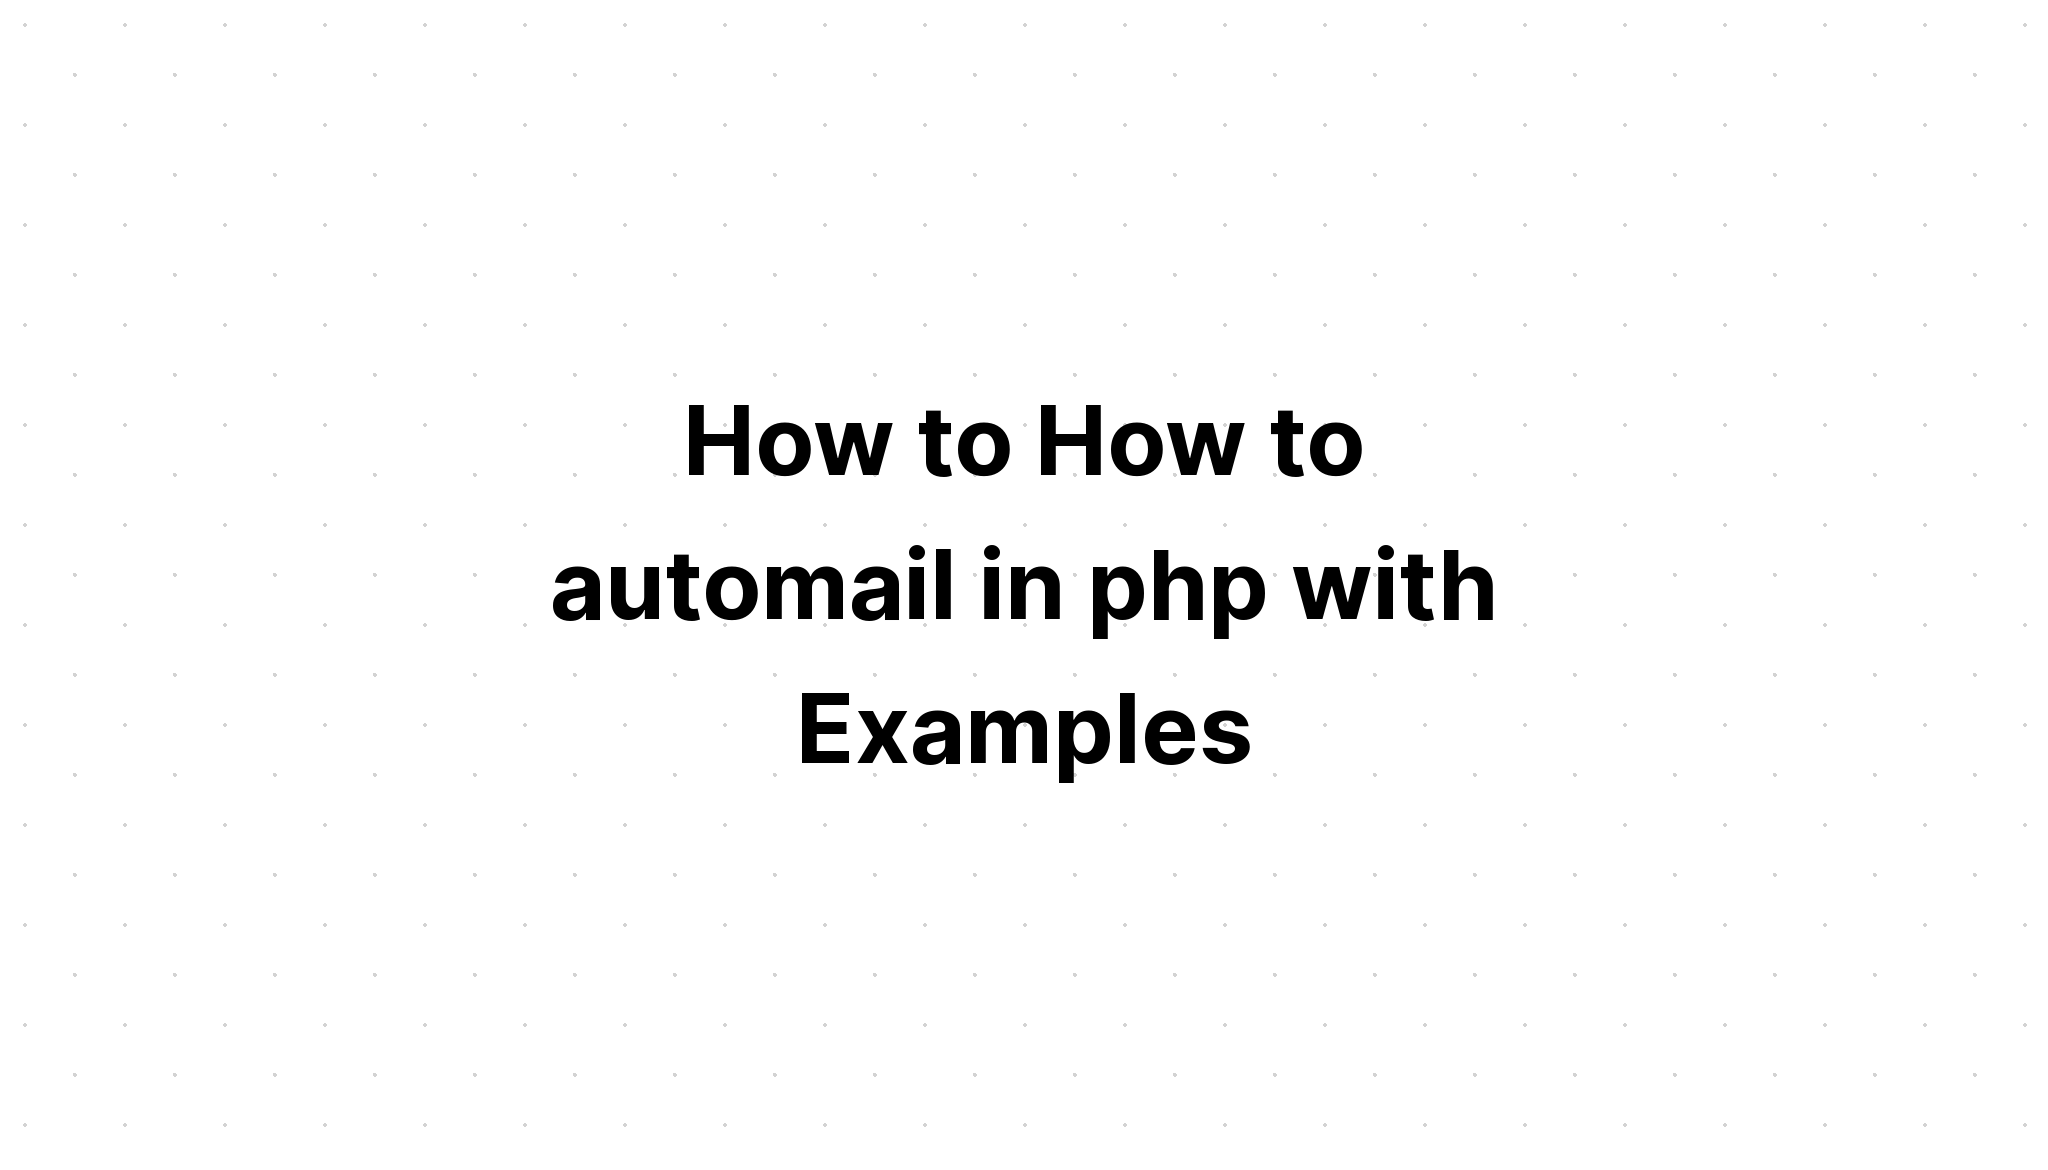 Cara Cara automail di php dengan Contoh